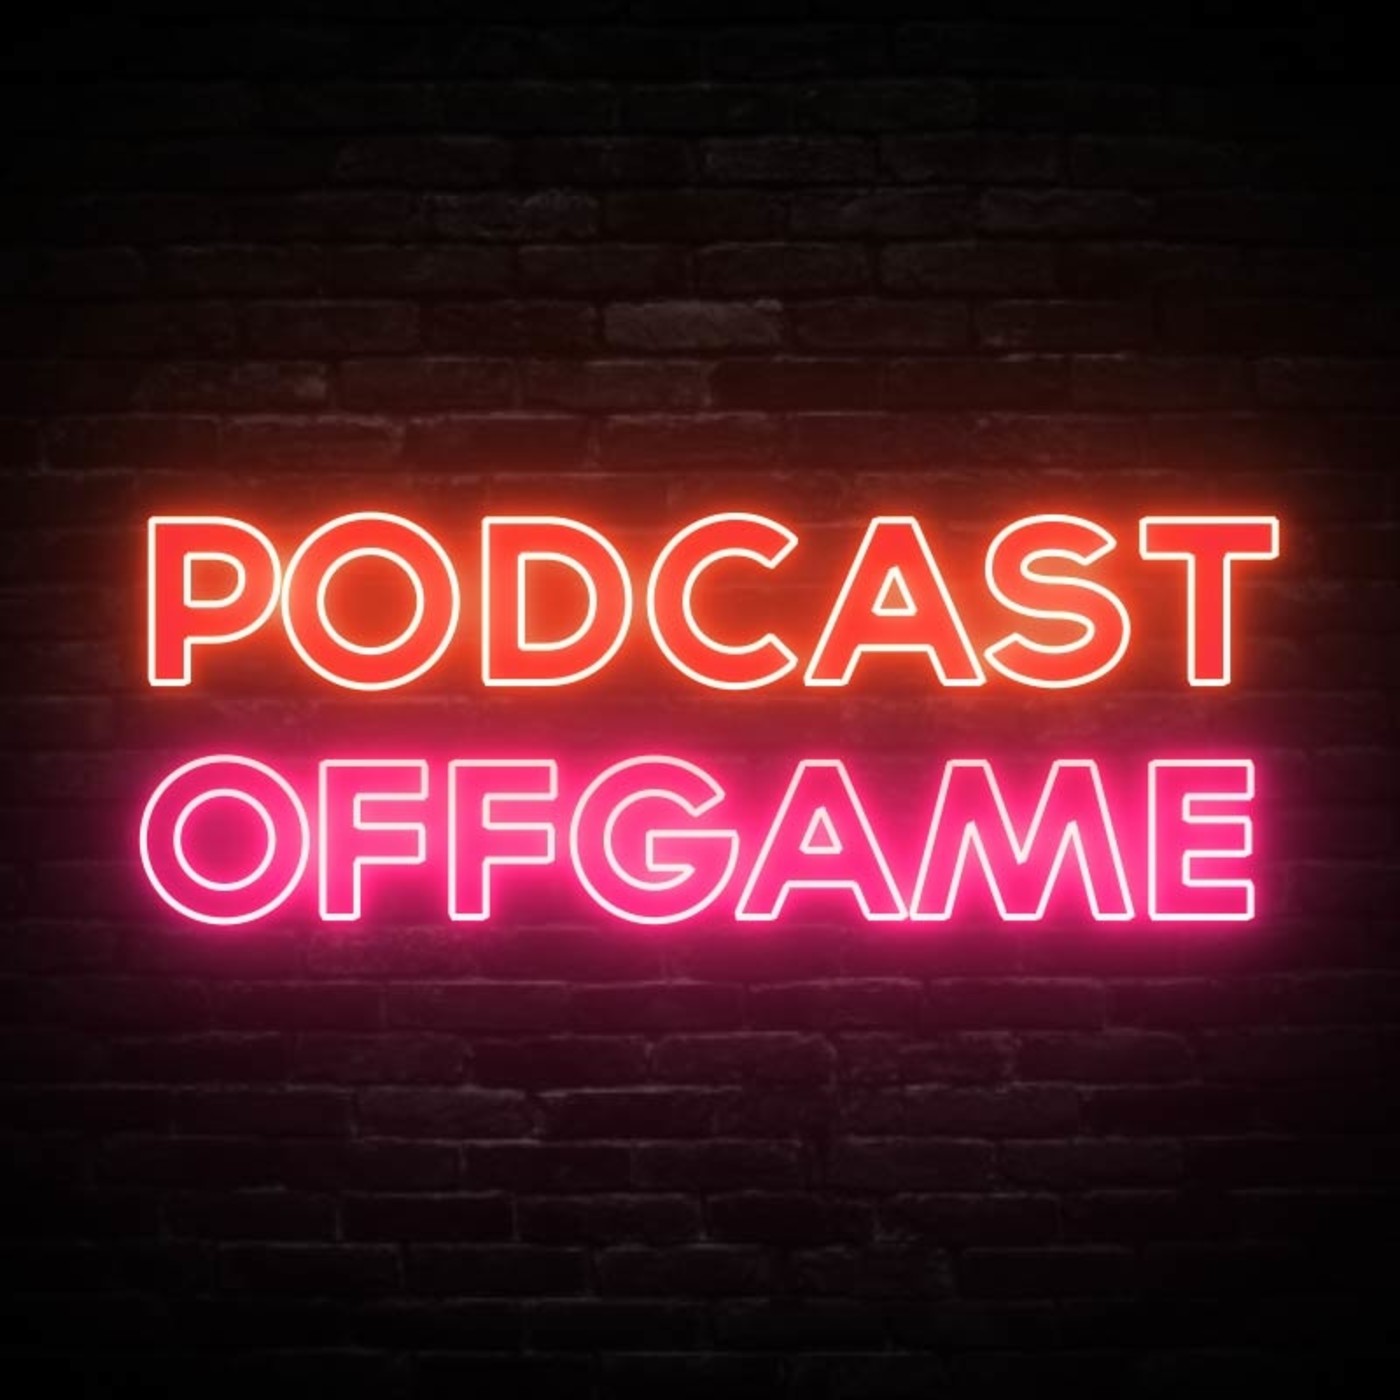 Podcast off game - xbox series x 12 teraflops mejores gráficos que ps5?, elitsuan, infiltrado